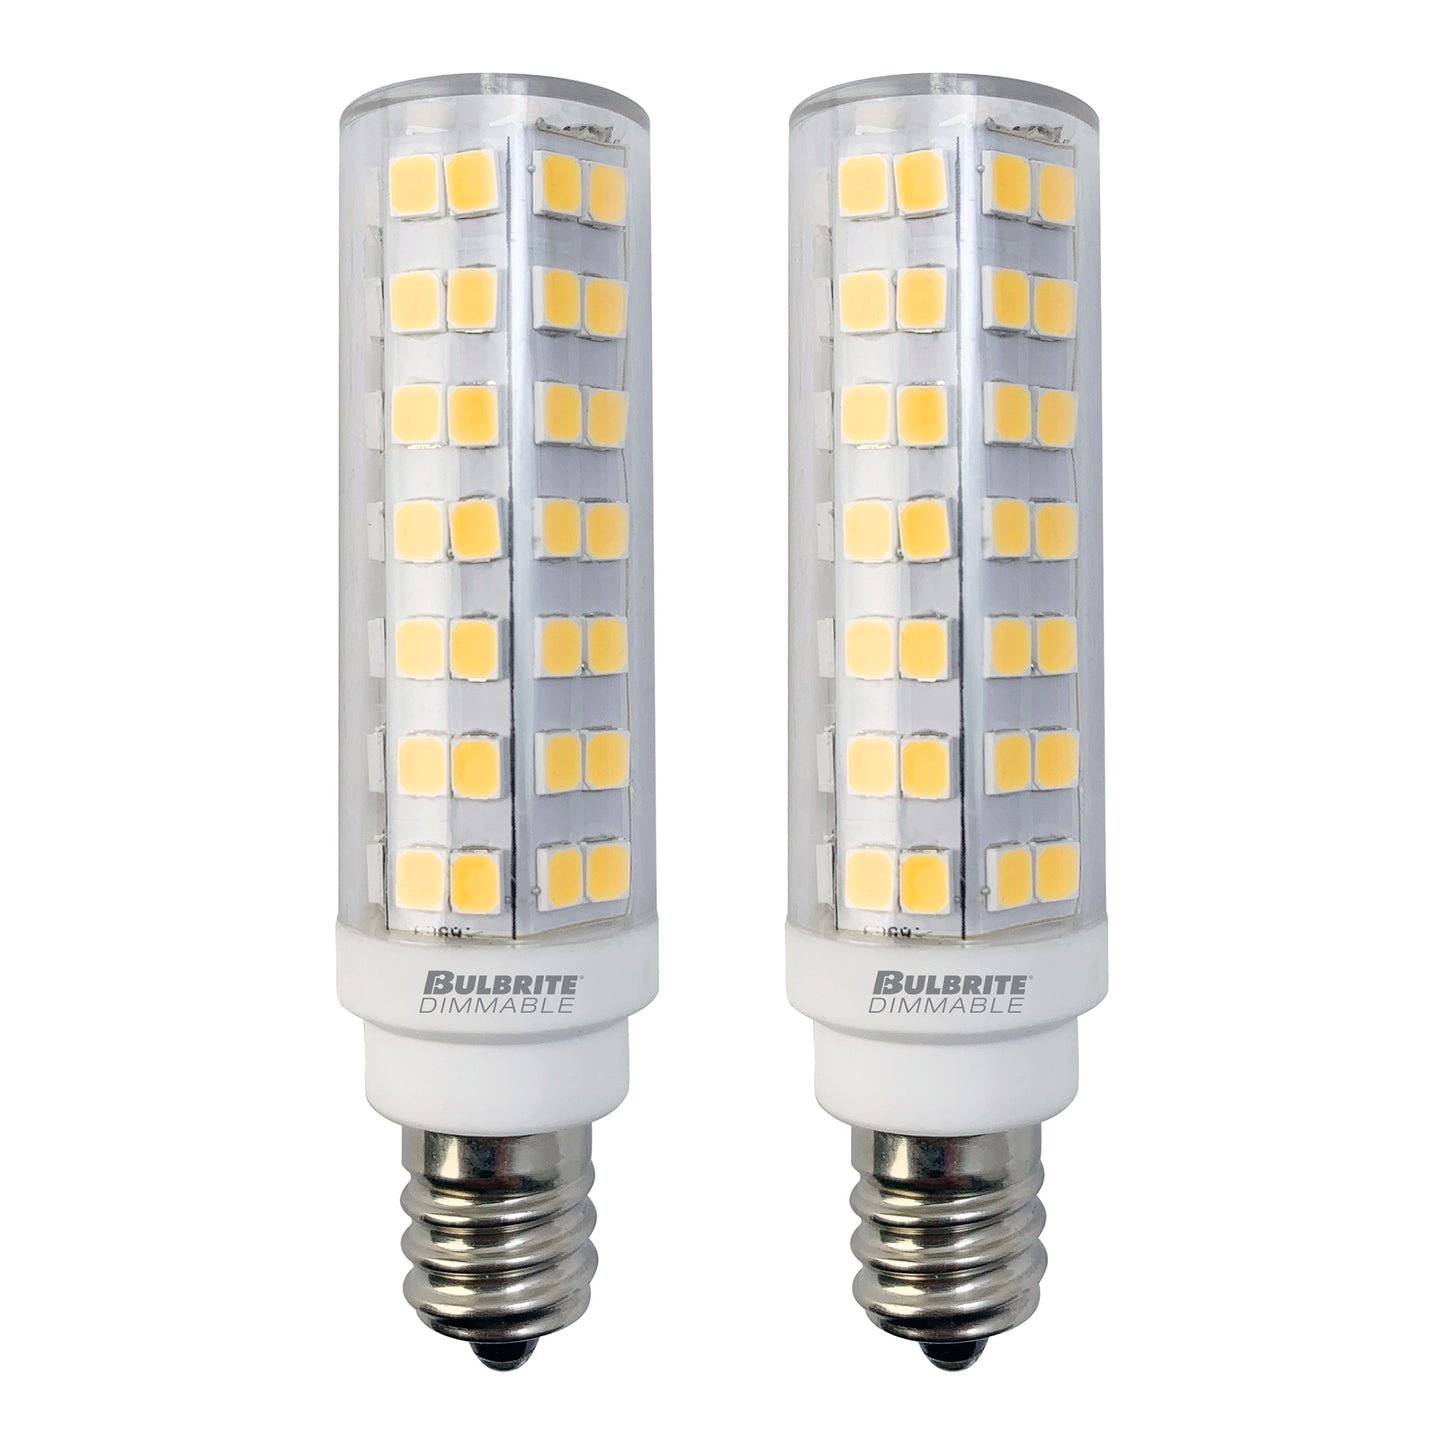 770643 - Dimmable Clear T6 Candelabra LED Light Bulb - 6.5 Watt - 3000K - 2 Pack